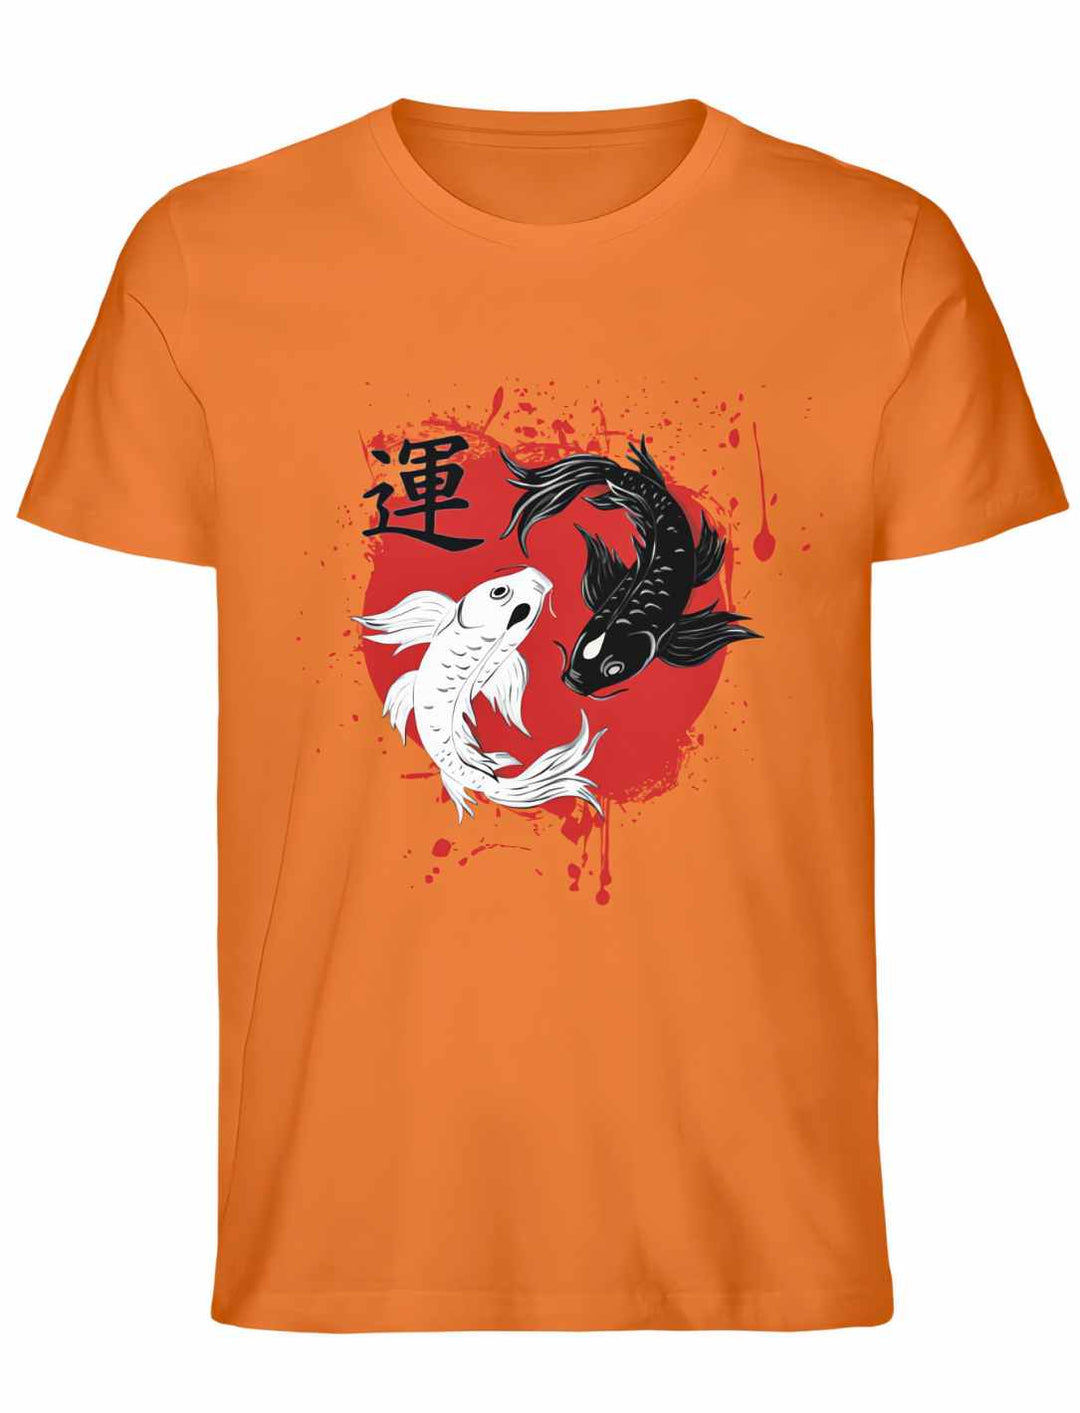 Harmonic Koi Unisex T-Shirt in Bright Orange – Lebendige Farbe, die das japanische Motiv hervorhebt.